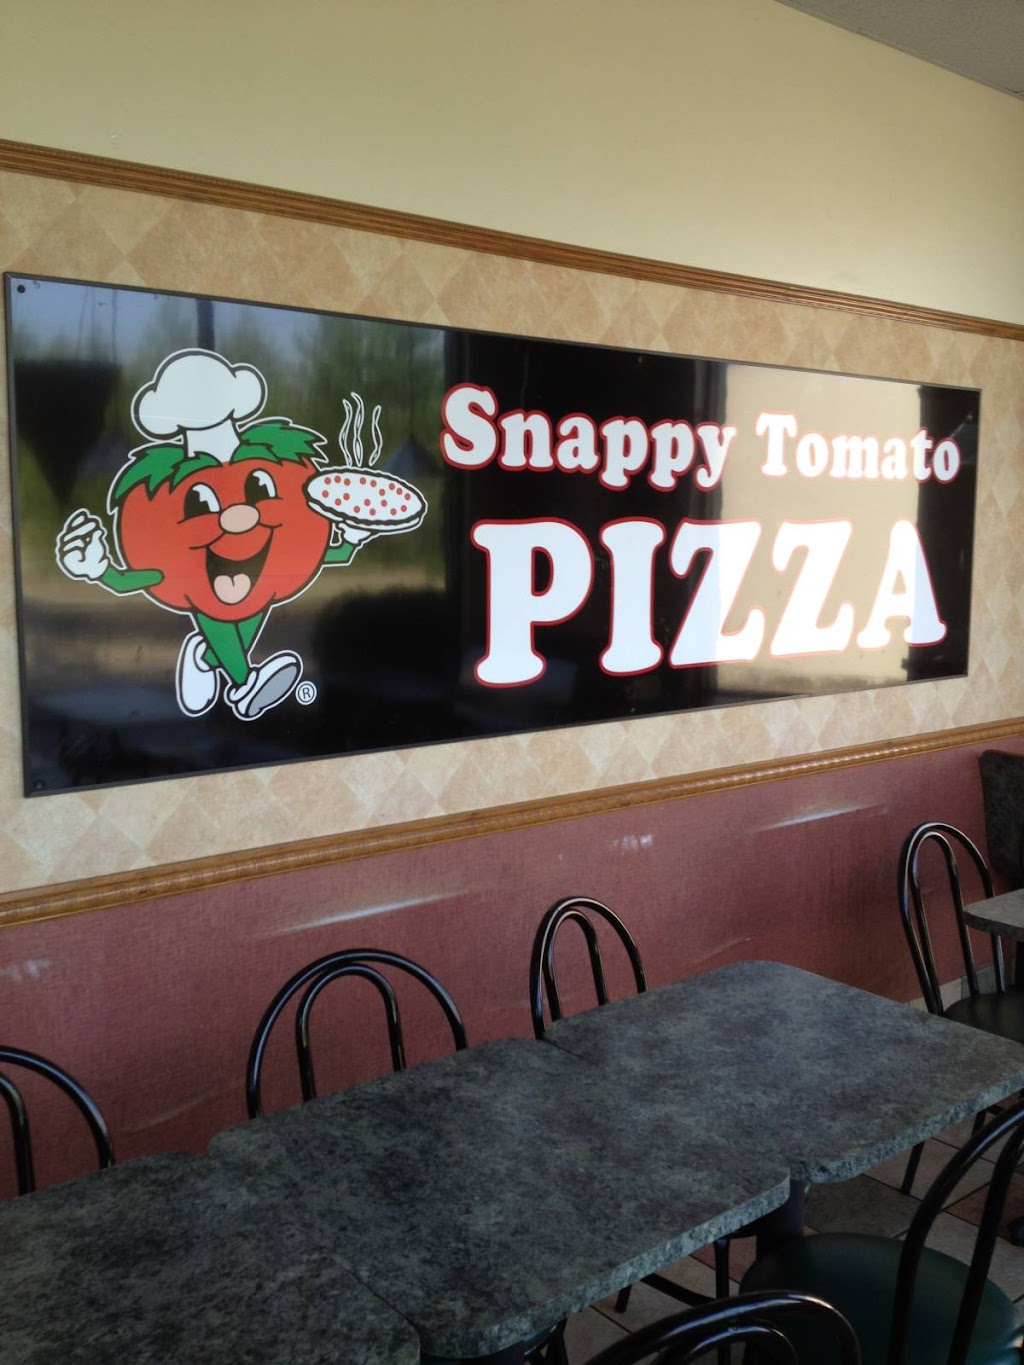 Snappy Tomato Pizza | 117 N Main St #1, Cynthiana, KY 41031 | Phone: (859) 235-7627